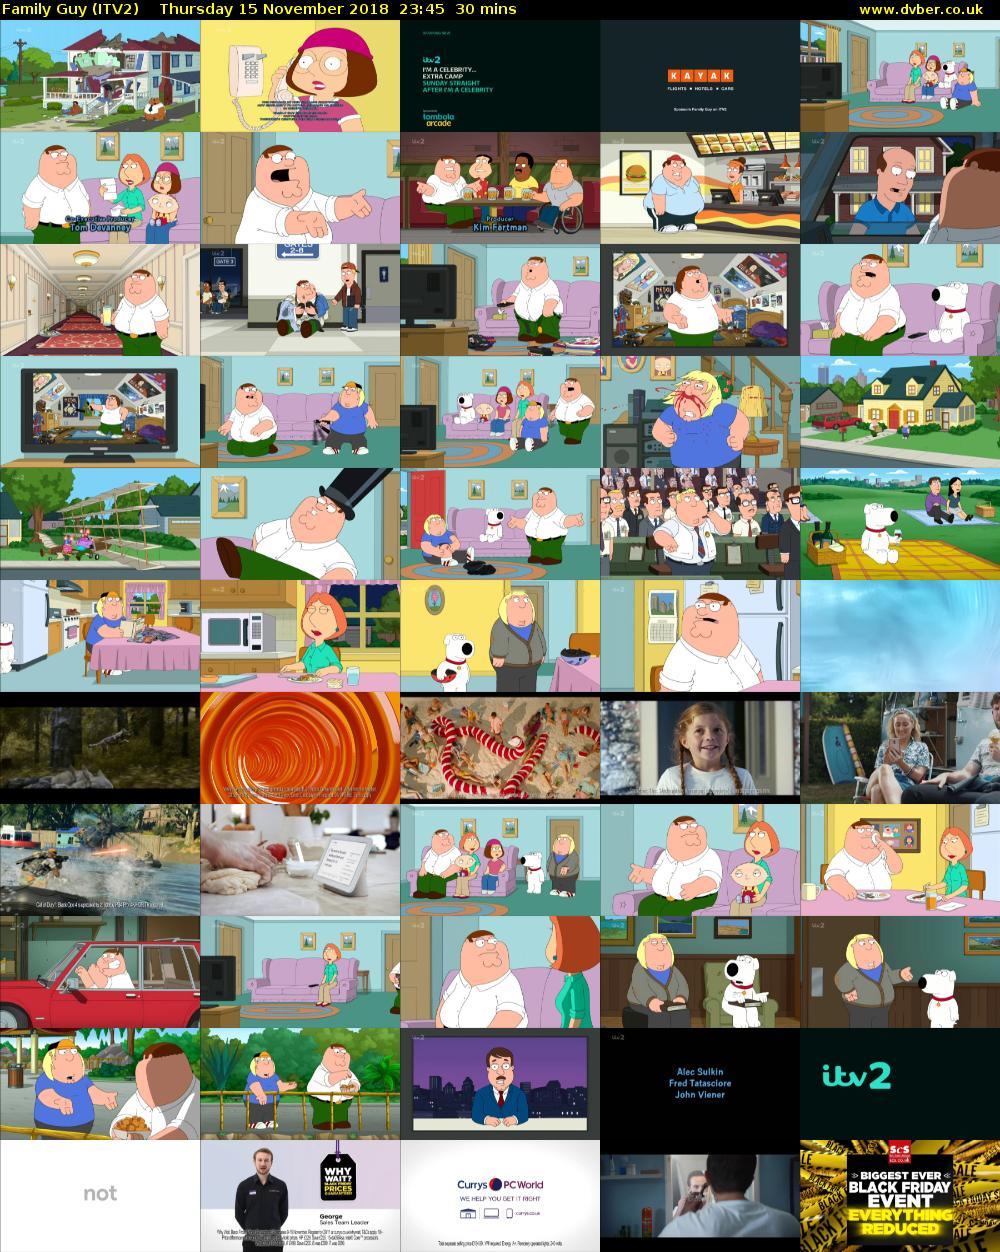 Family Guy (ITV2) Thursday 15 November 2018 23:45 - 00:15